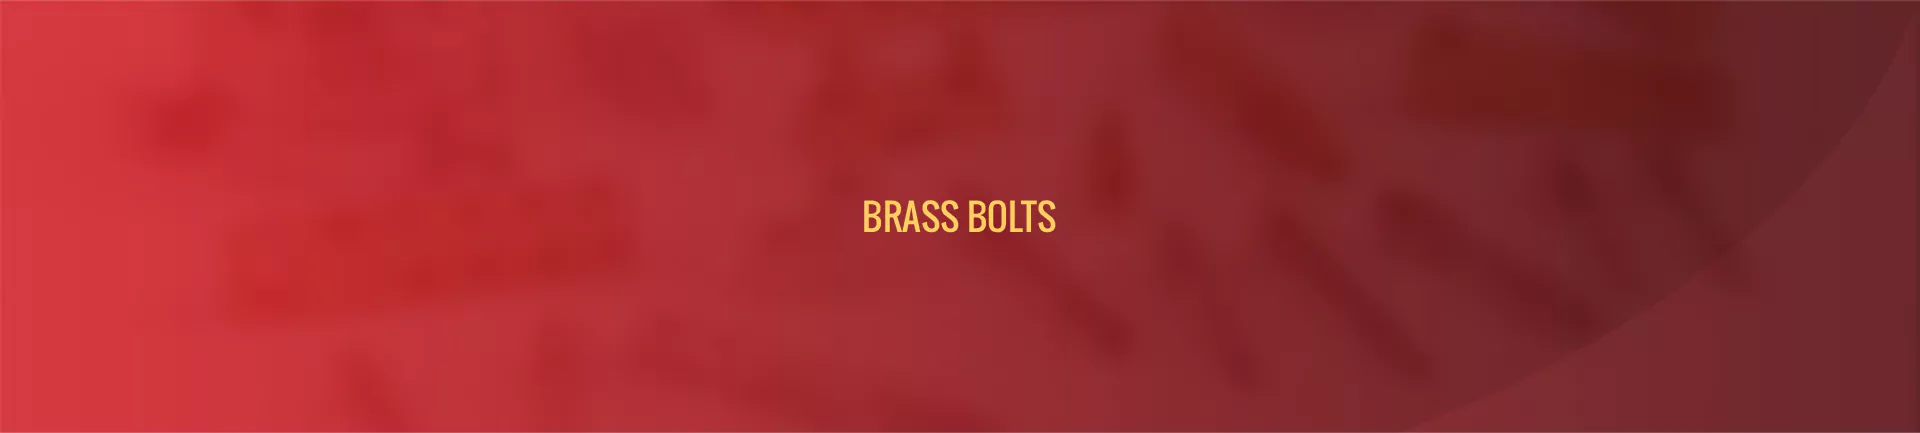 brass-bolt-banner